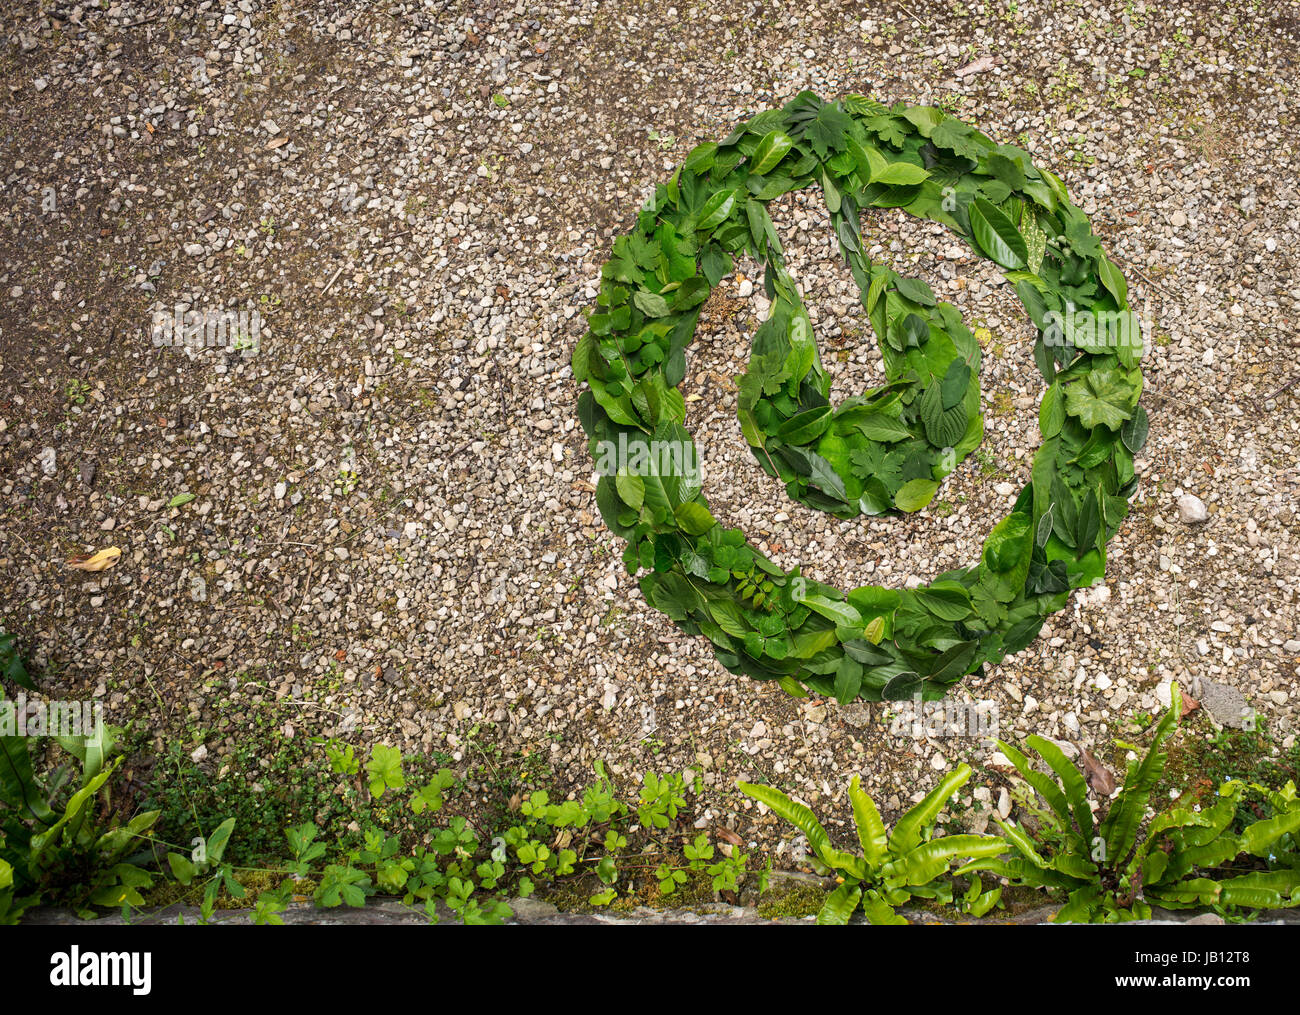 Symbole d'alimentation fabriqués à partir de feuilles vertes Banque D'Images